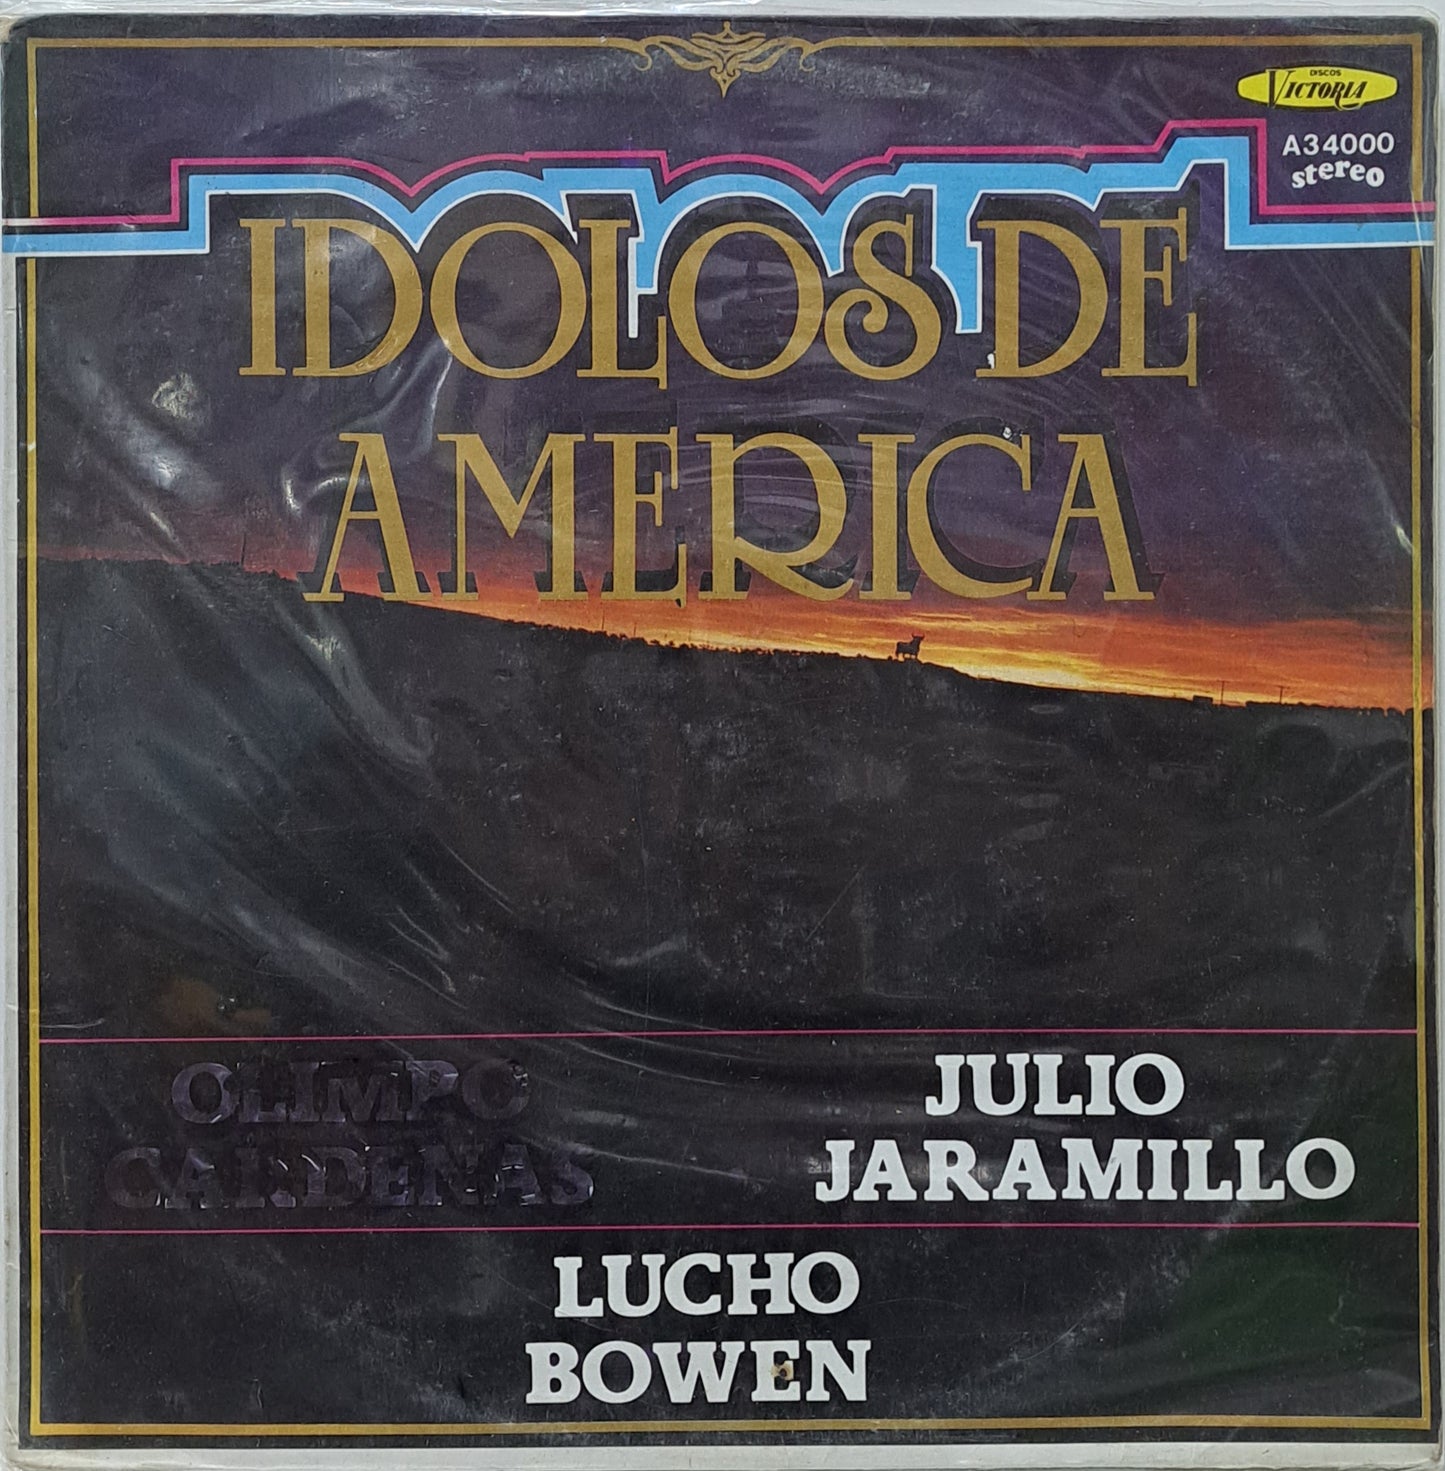 JULIO JARAMILLO  Y LUCHO BOWEN  - IDOLOS DEL AMERICA -P